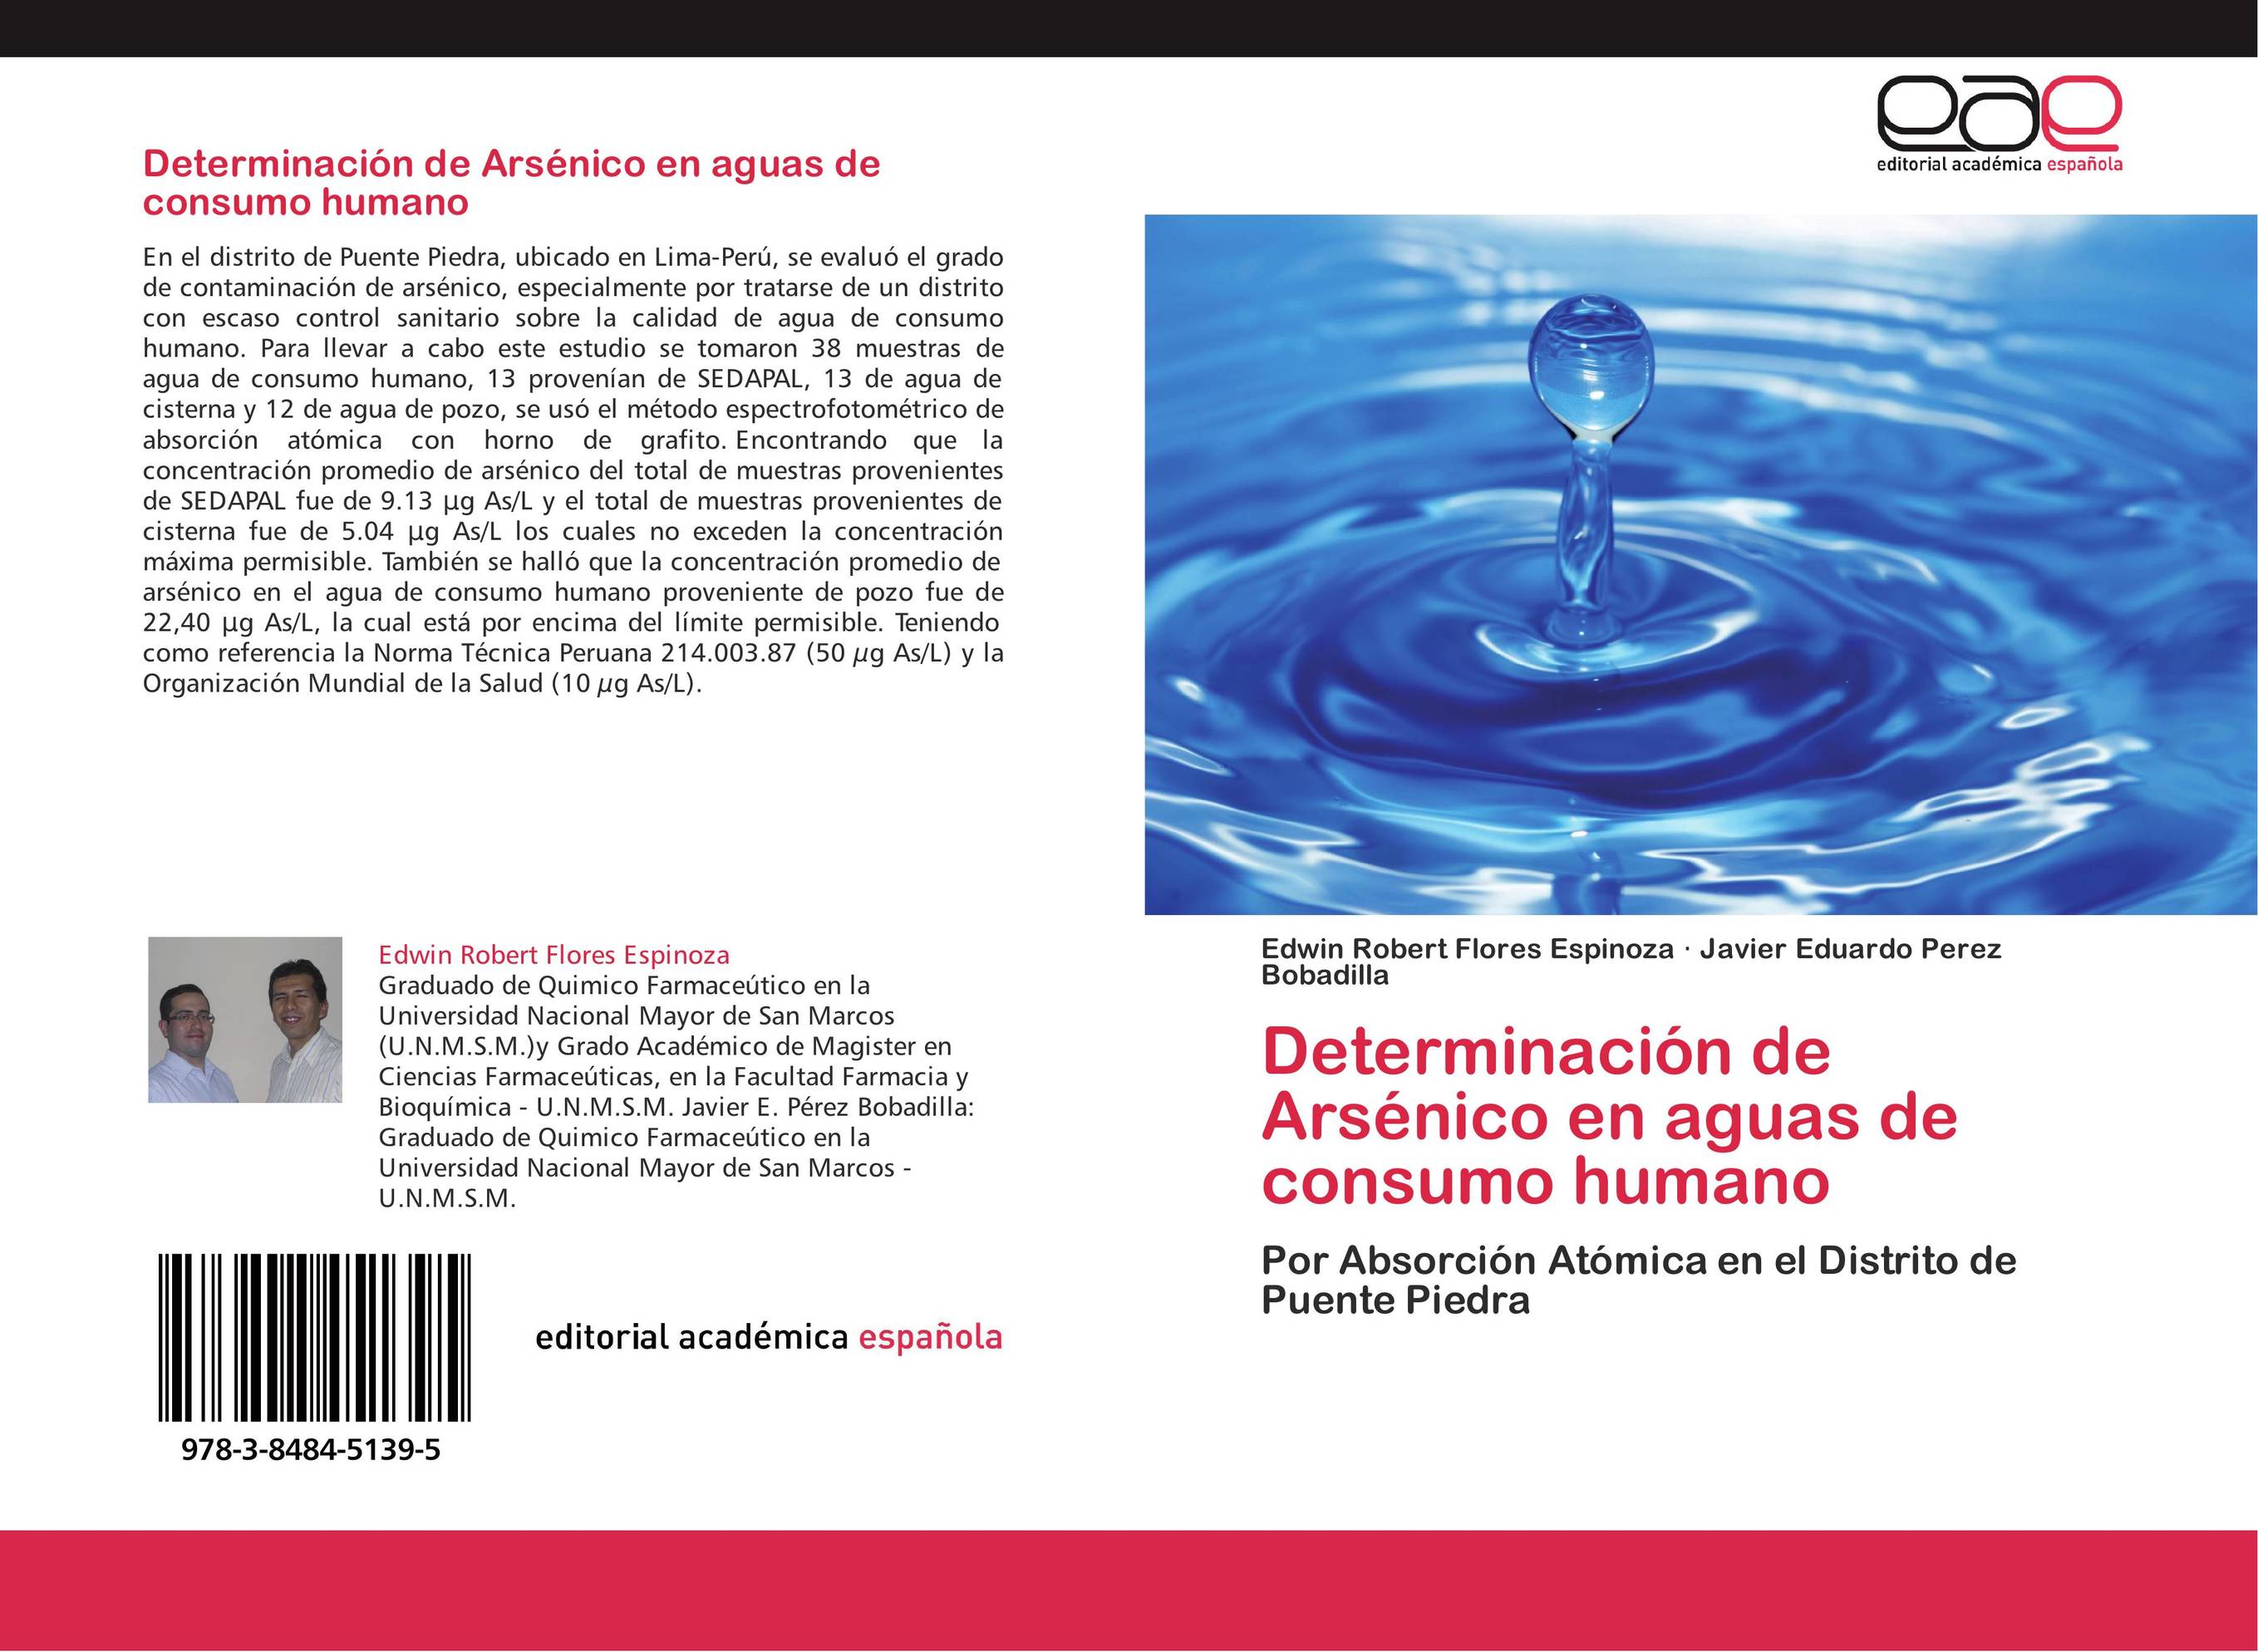 Determinación de Arsénico en aguas de consumo humano